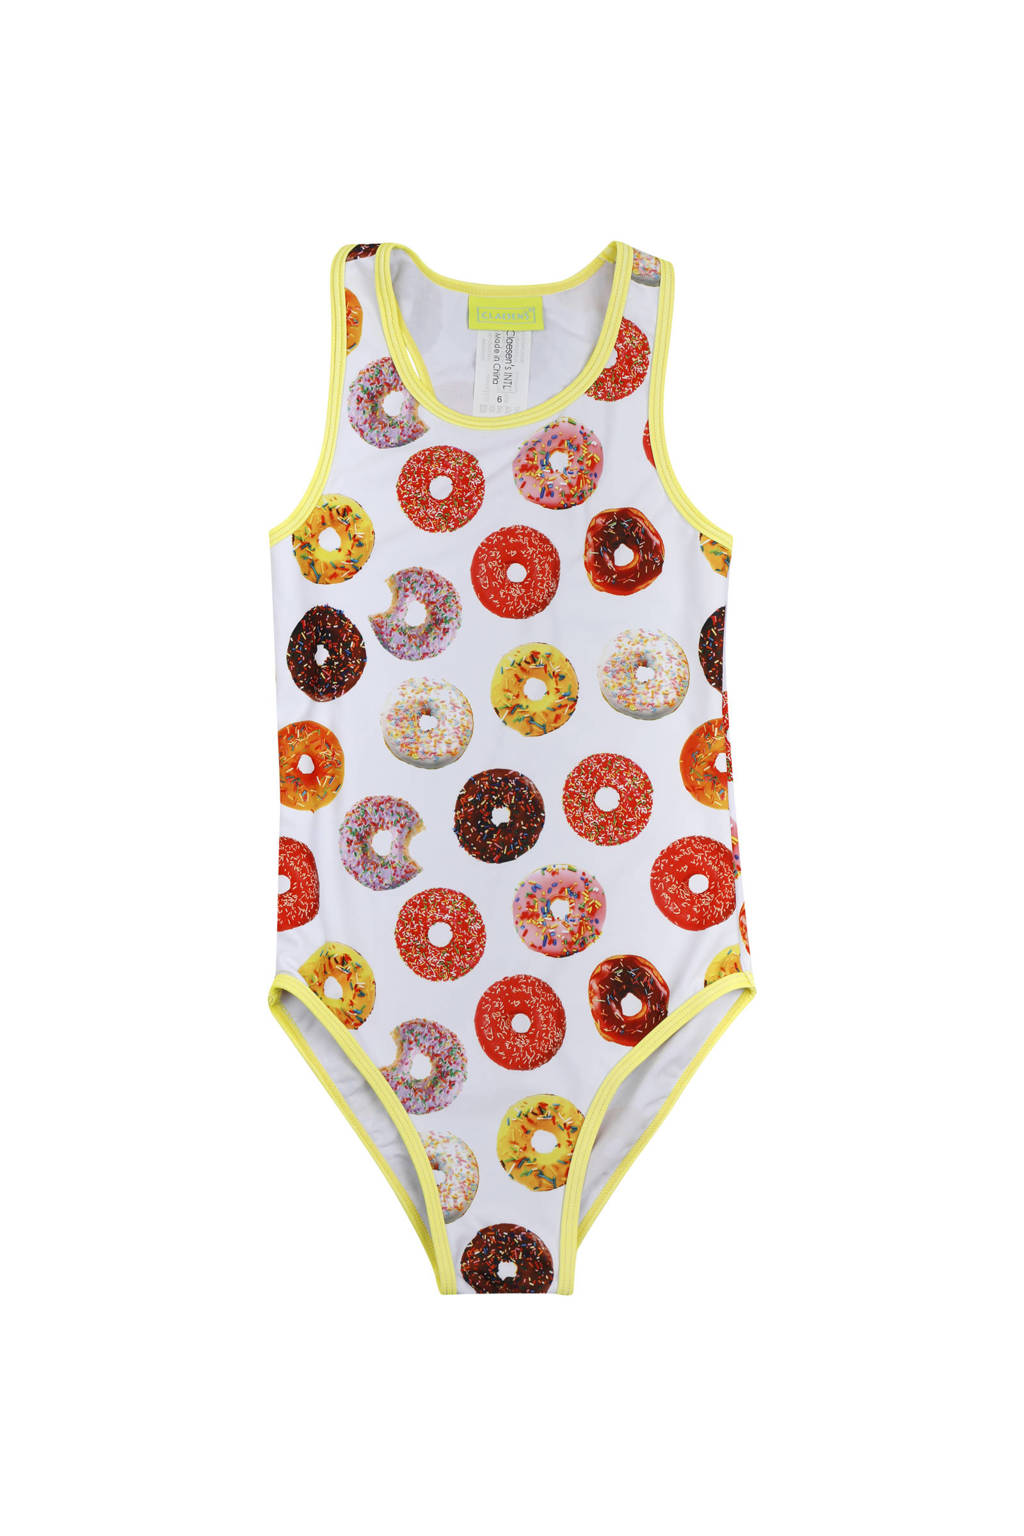 bestrating Nuchter verlangen Claesen's badpak met donut print wit/rood/geel | wehkamp